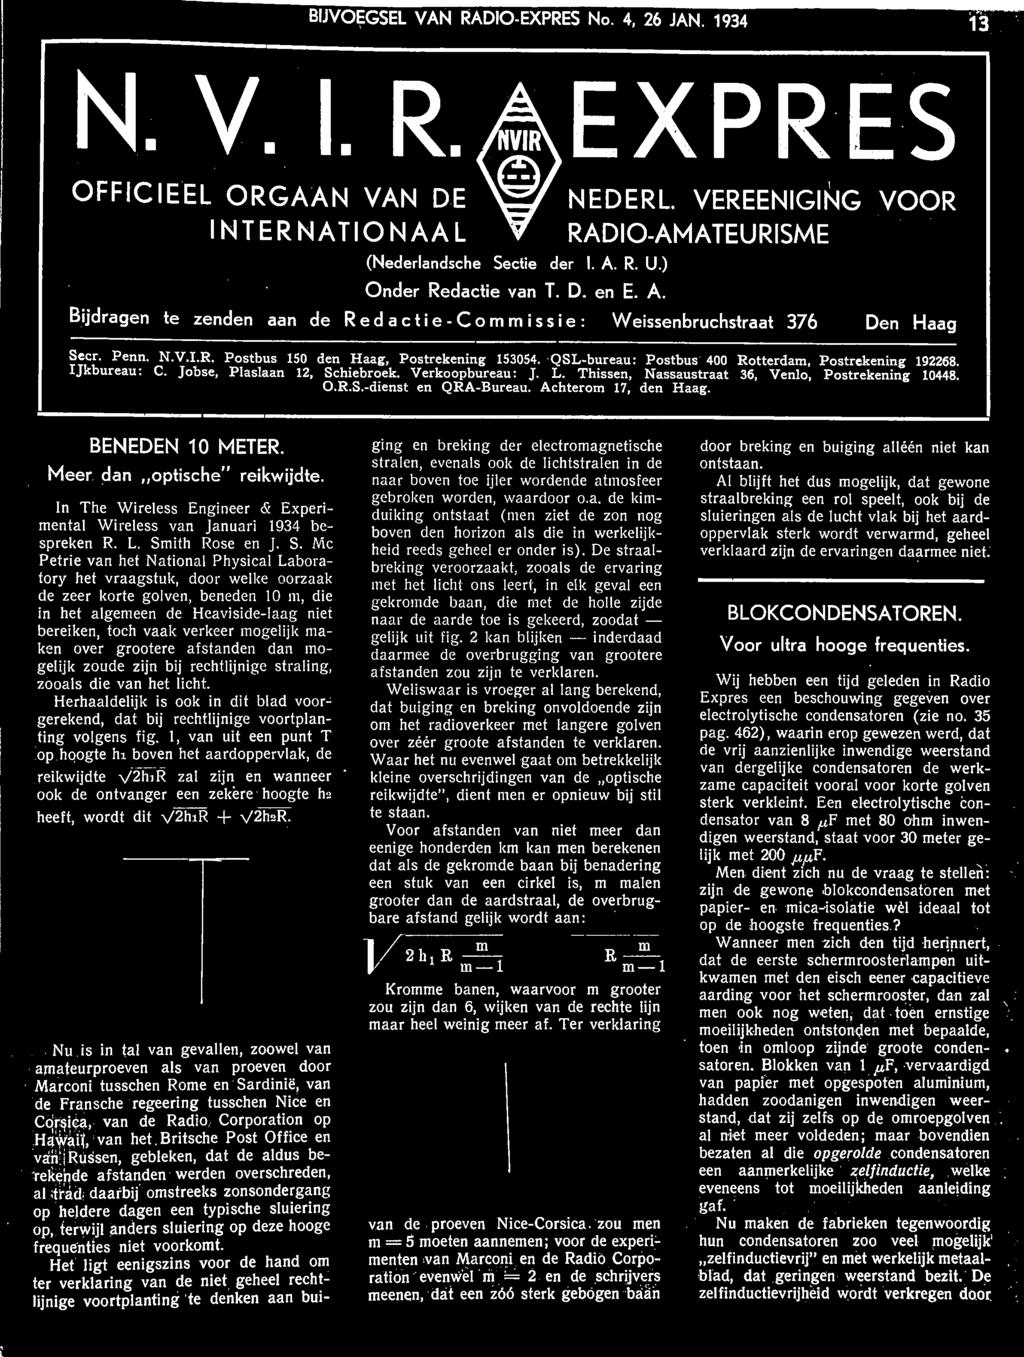 QSL-bureau: Postbus 400 Rotterdam, Postrekening 192268. IJkbureau: C. Jobse, Plaslaan 12, Schiebroek. Verkoopbureau: J. L. Thissen, Nassaustraat 36, Venlo, Postrekening 10448. O.R.S.-dienst en QRA-Bureau.